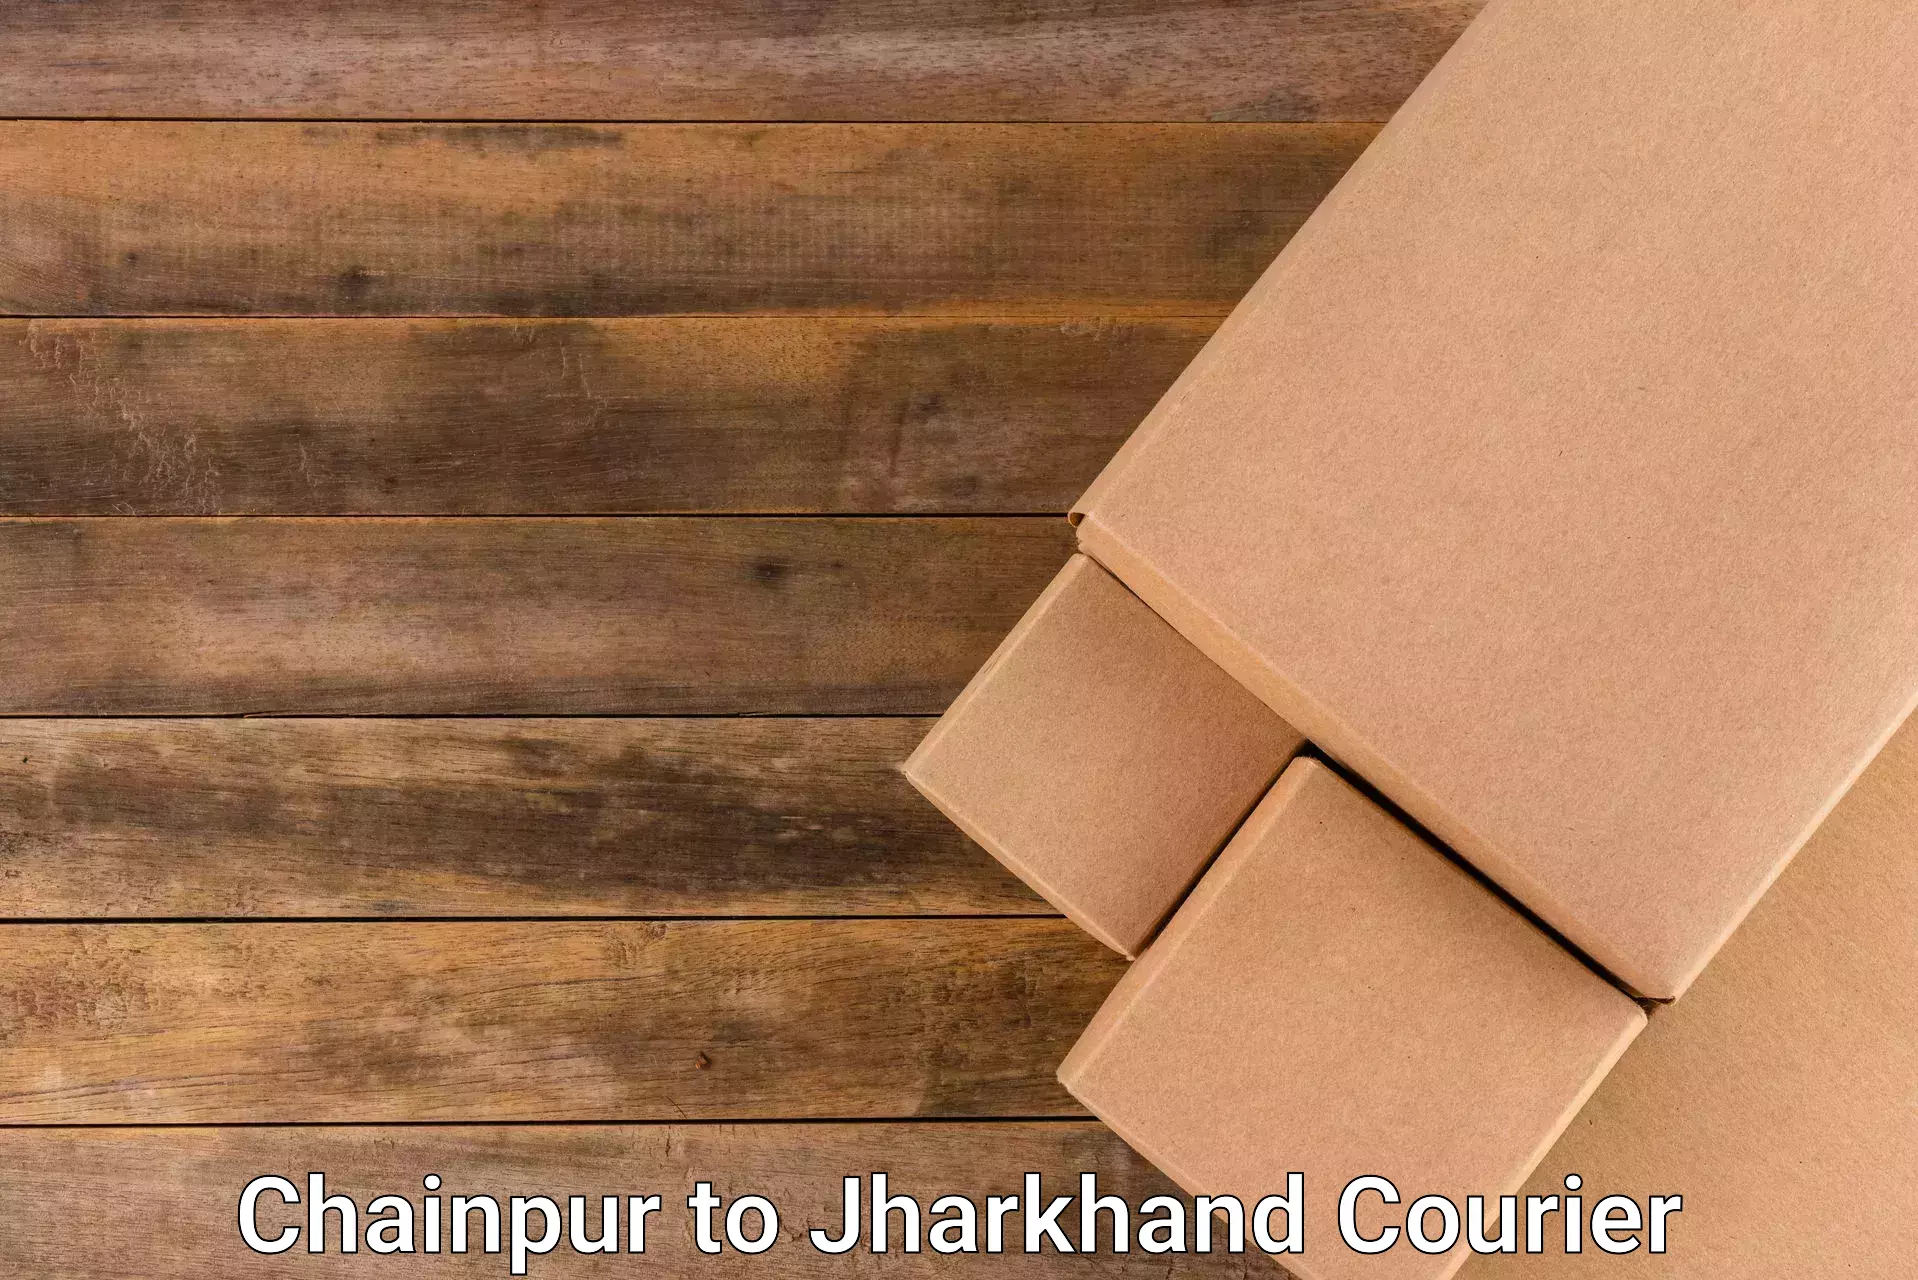 Efficient parcel transport Chainpur to Govindpur